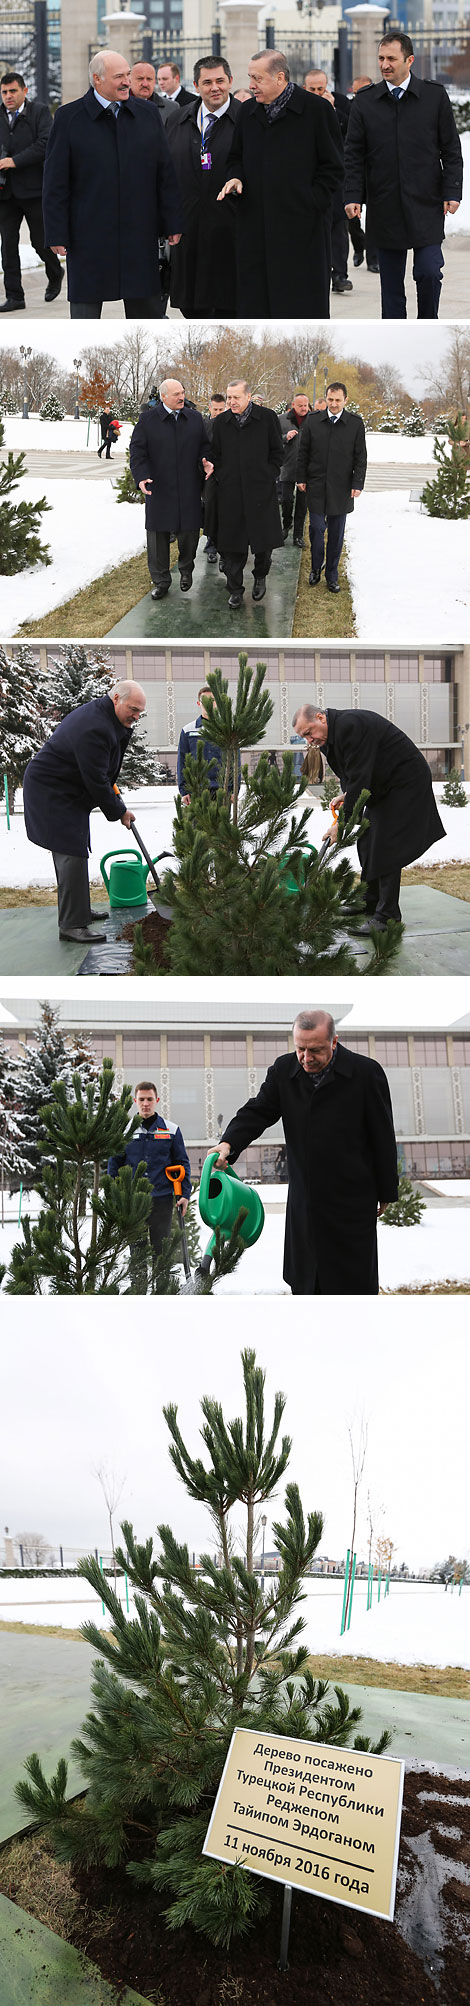 Реджеп Тайип Эрдоган посадил дерево на Аллее почетных гостей у Дворца Независимости